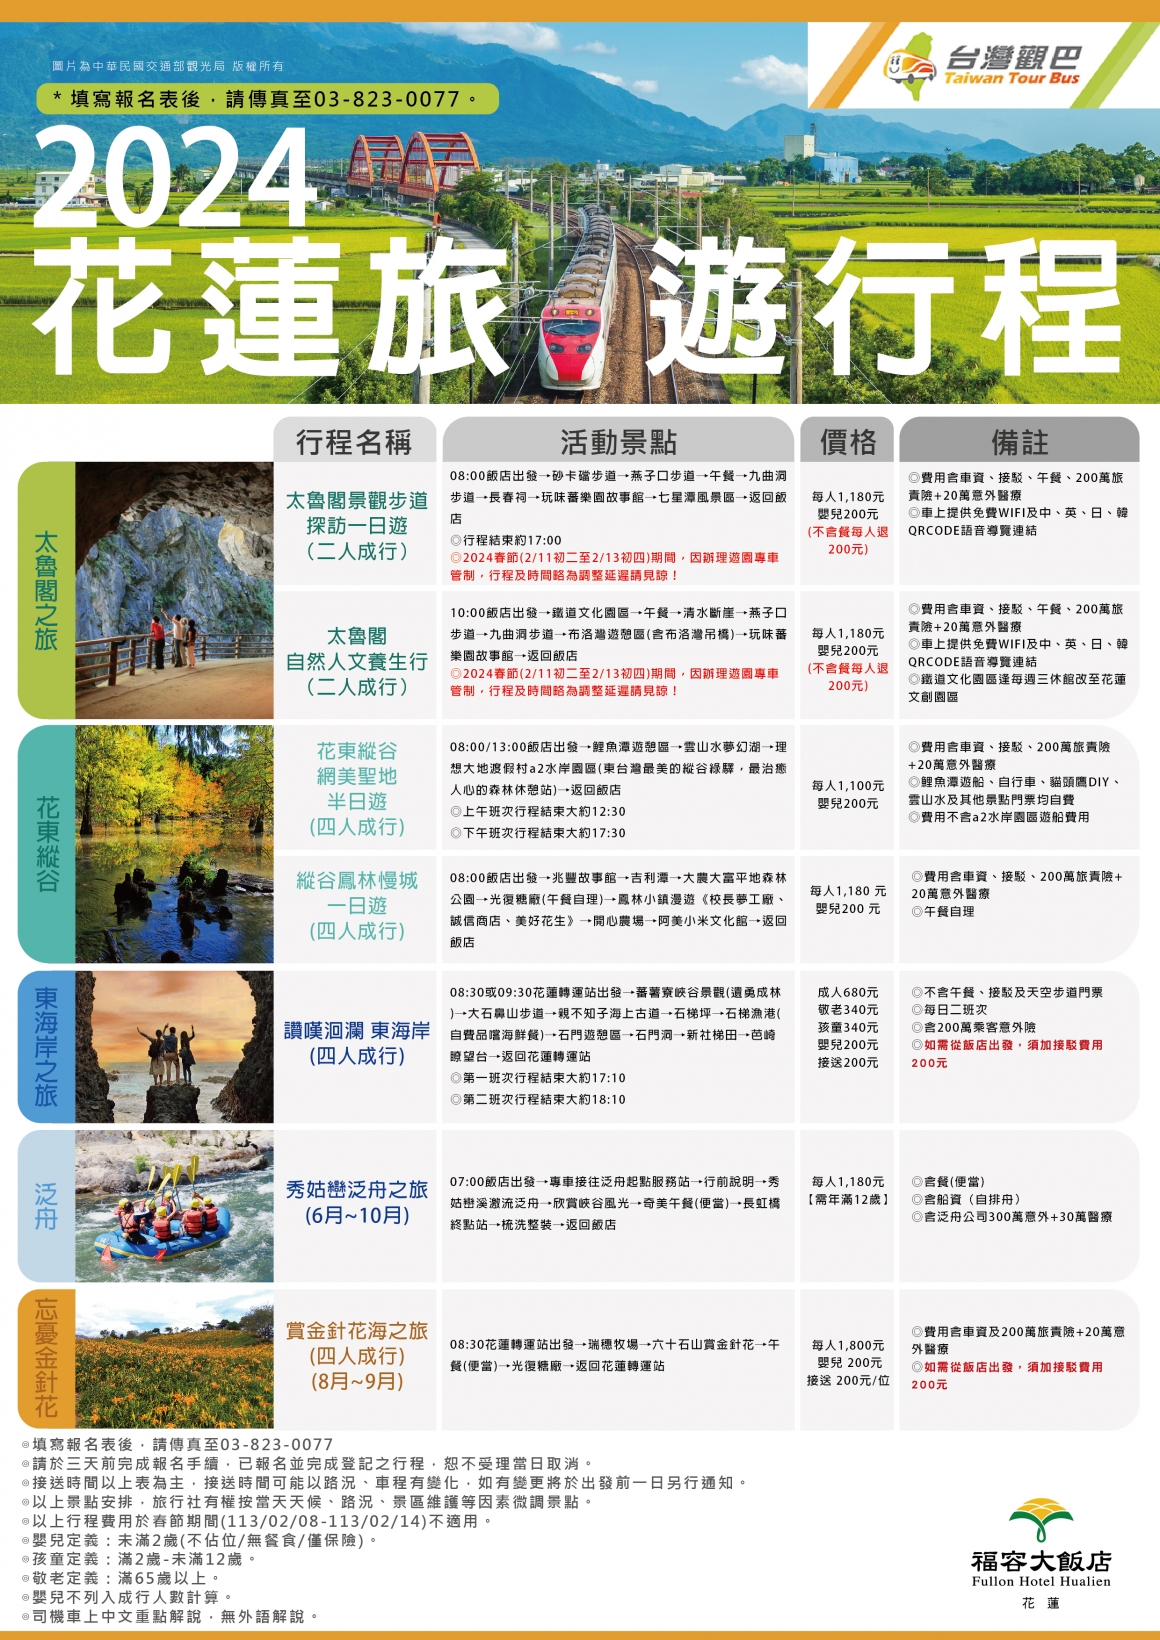 2022 台灣觀巴旅遊行程－0329-01